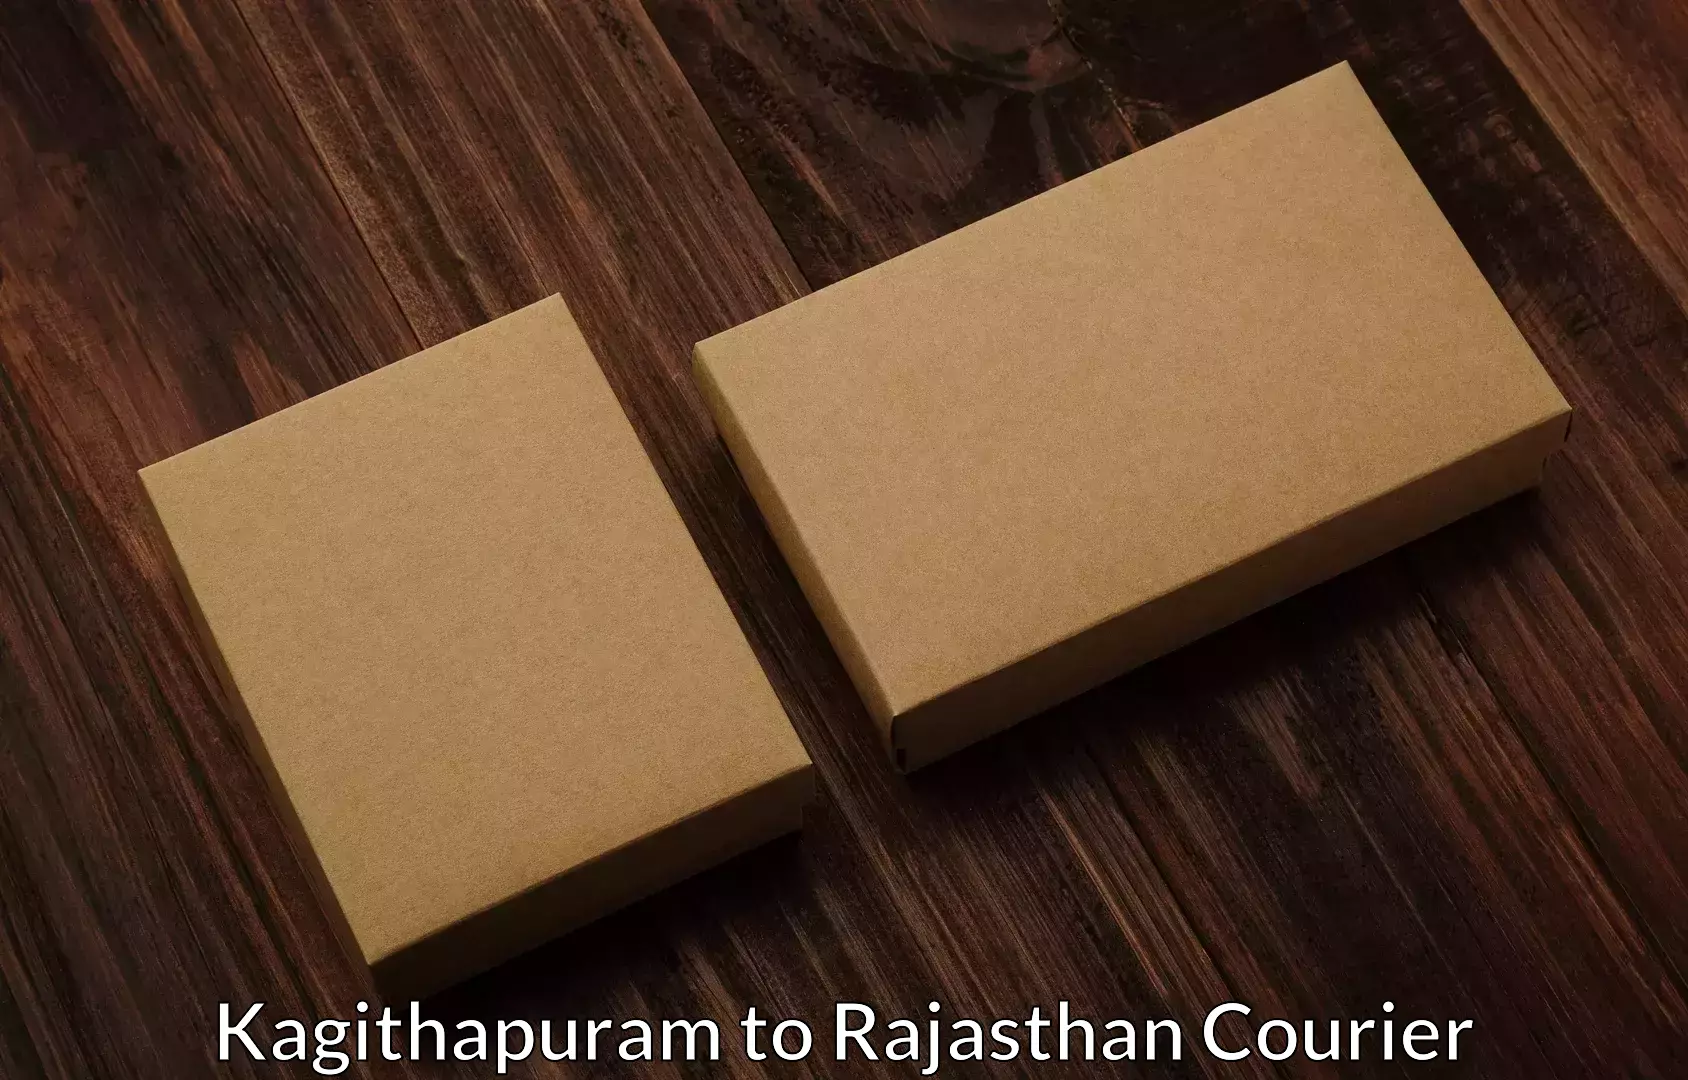 Furniture moving experts Kagithapuram to Anupgarh